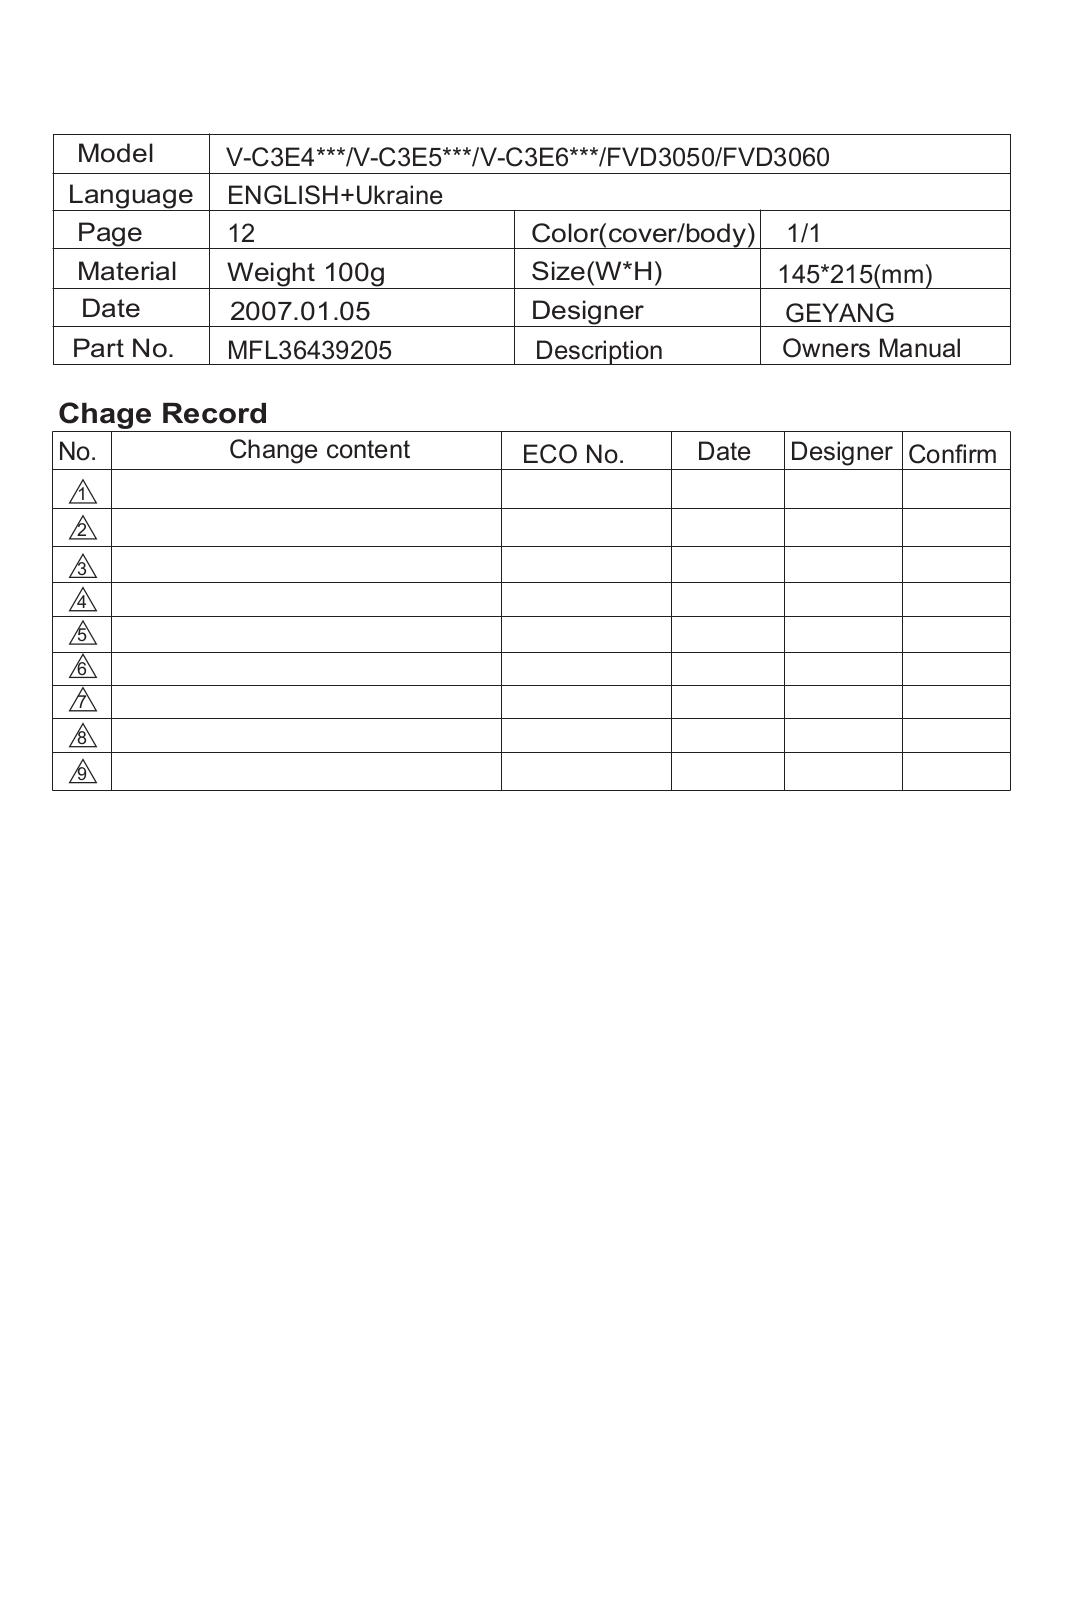 LG FVD3050, V-C3E57ST User Manual